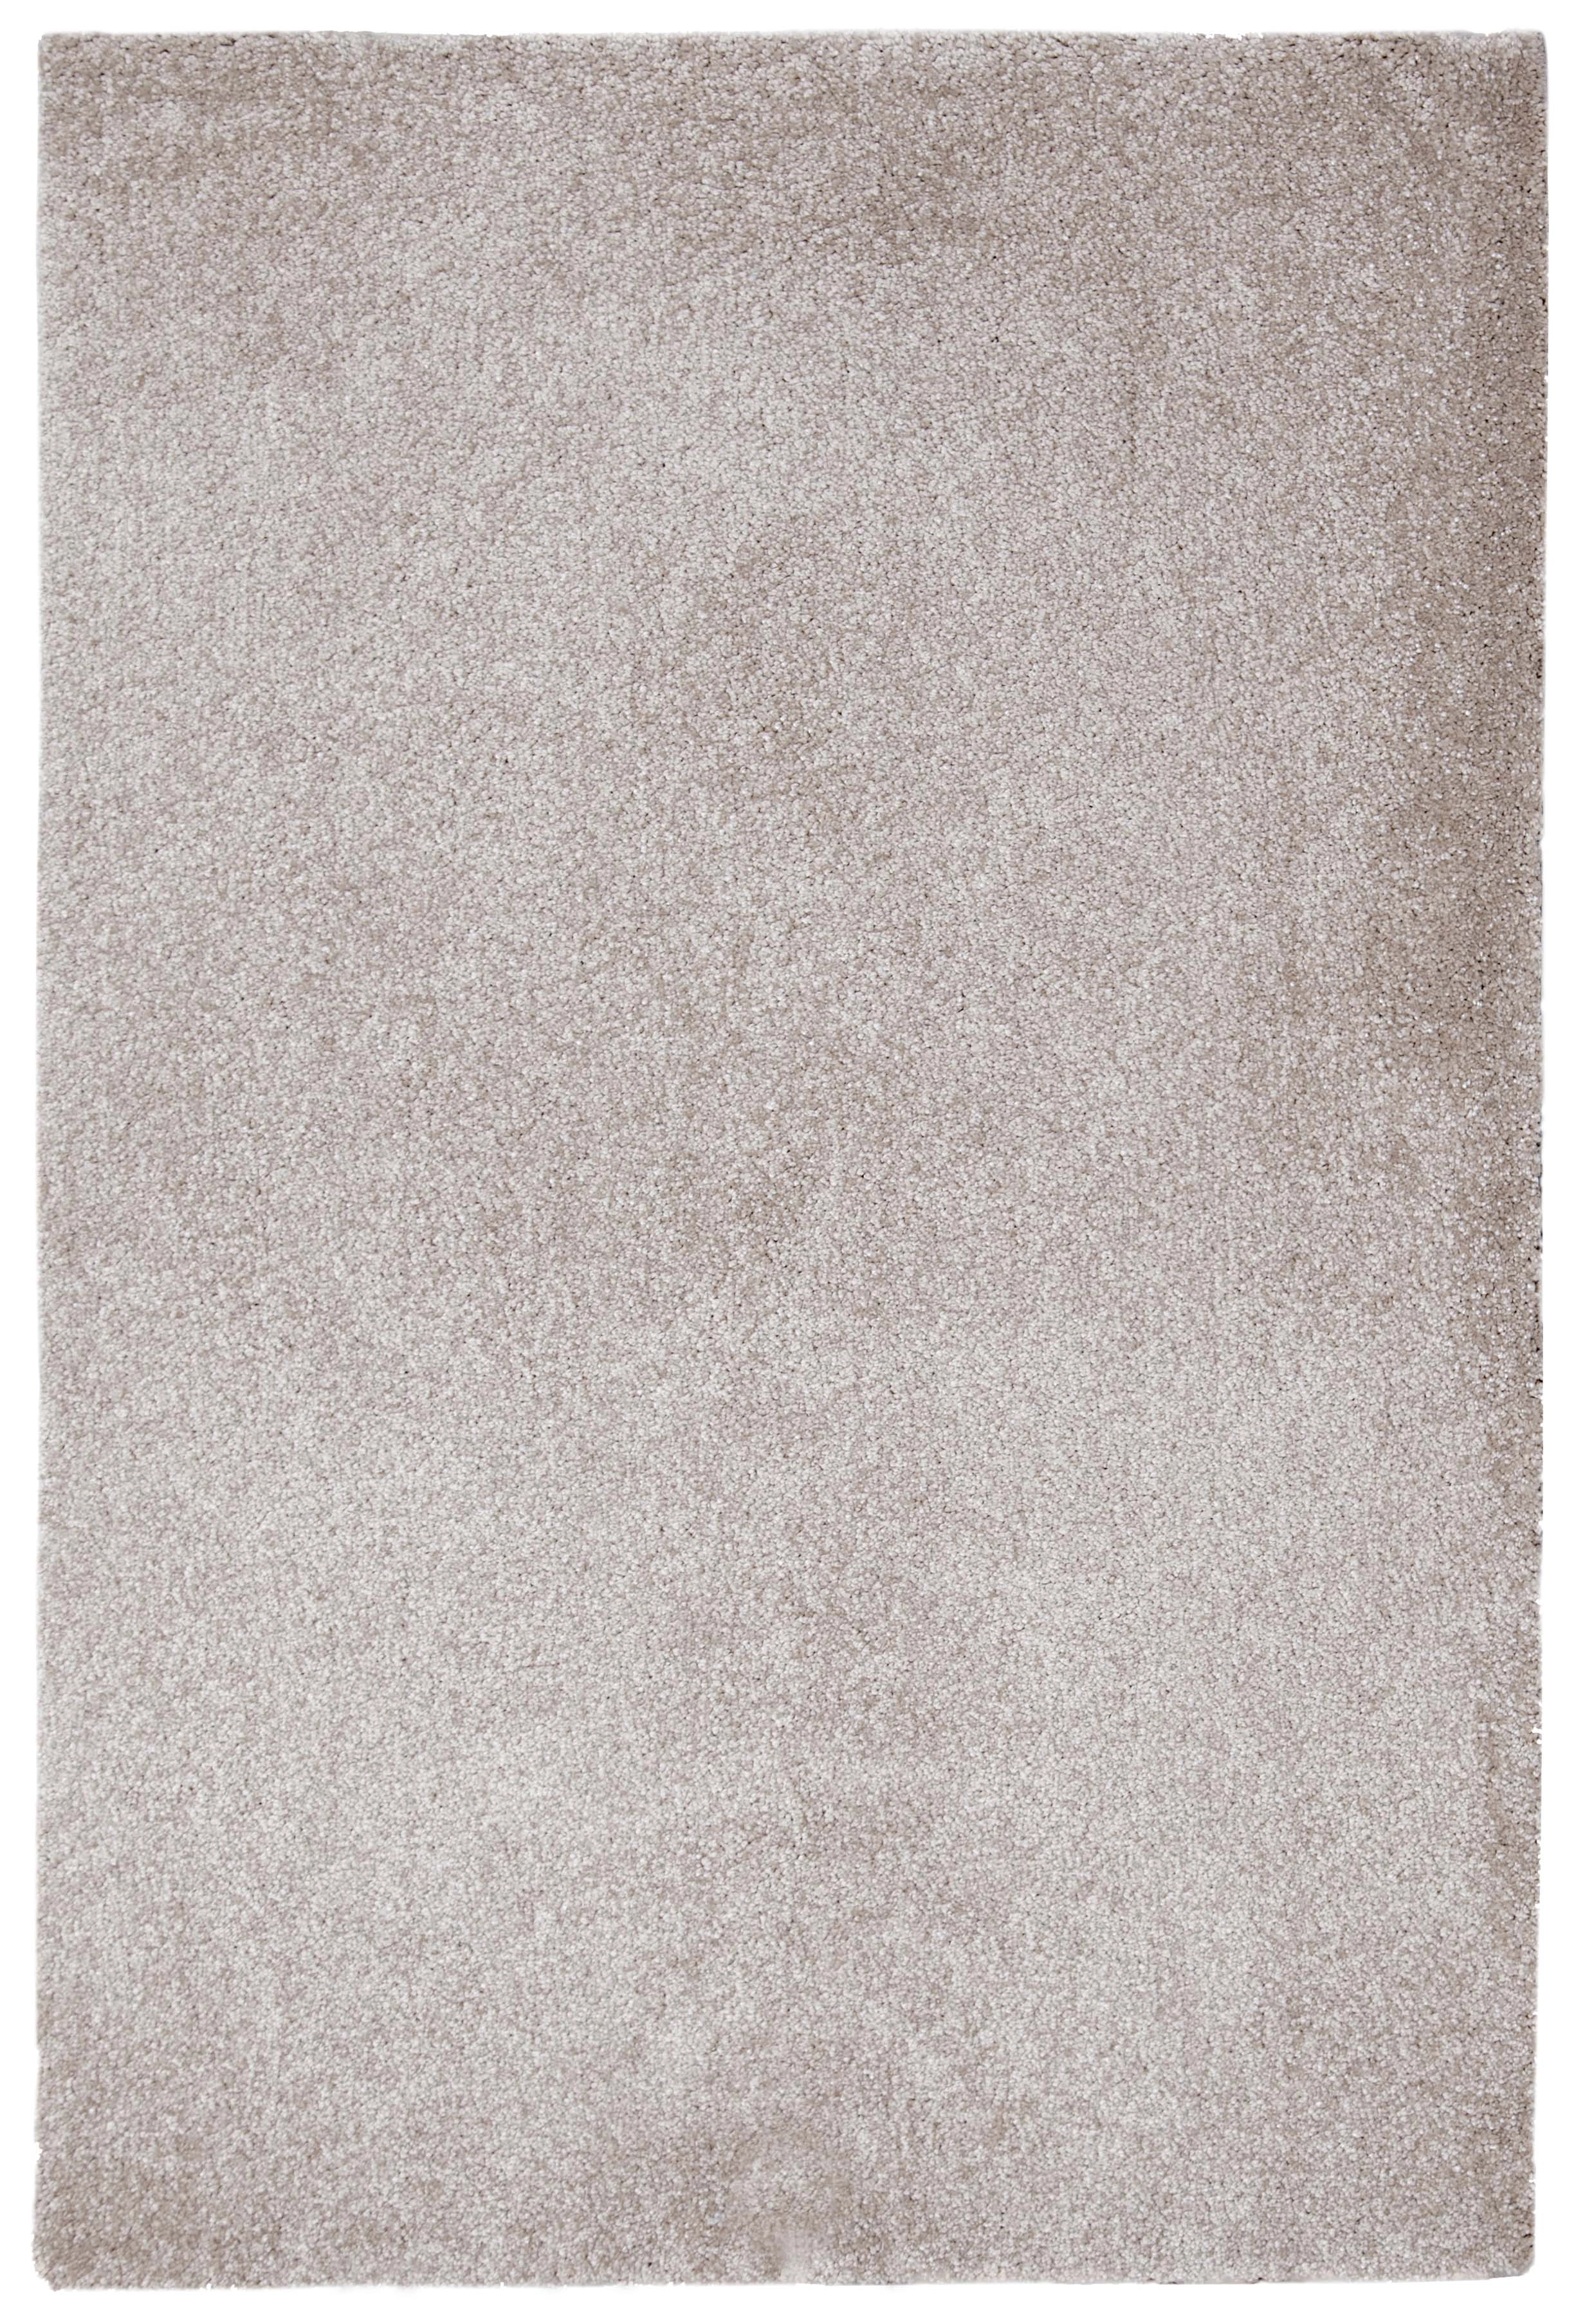 Tappeto per salotto Debby 120x170 cm beige